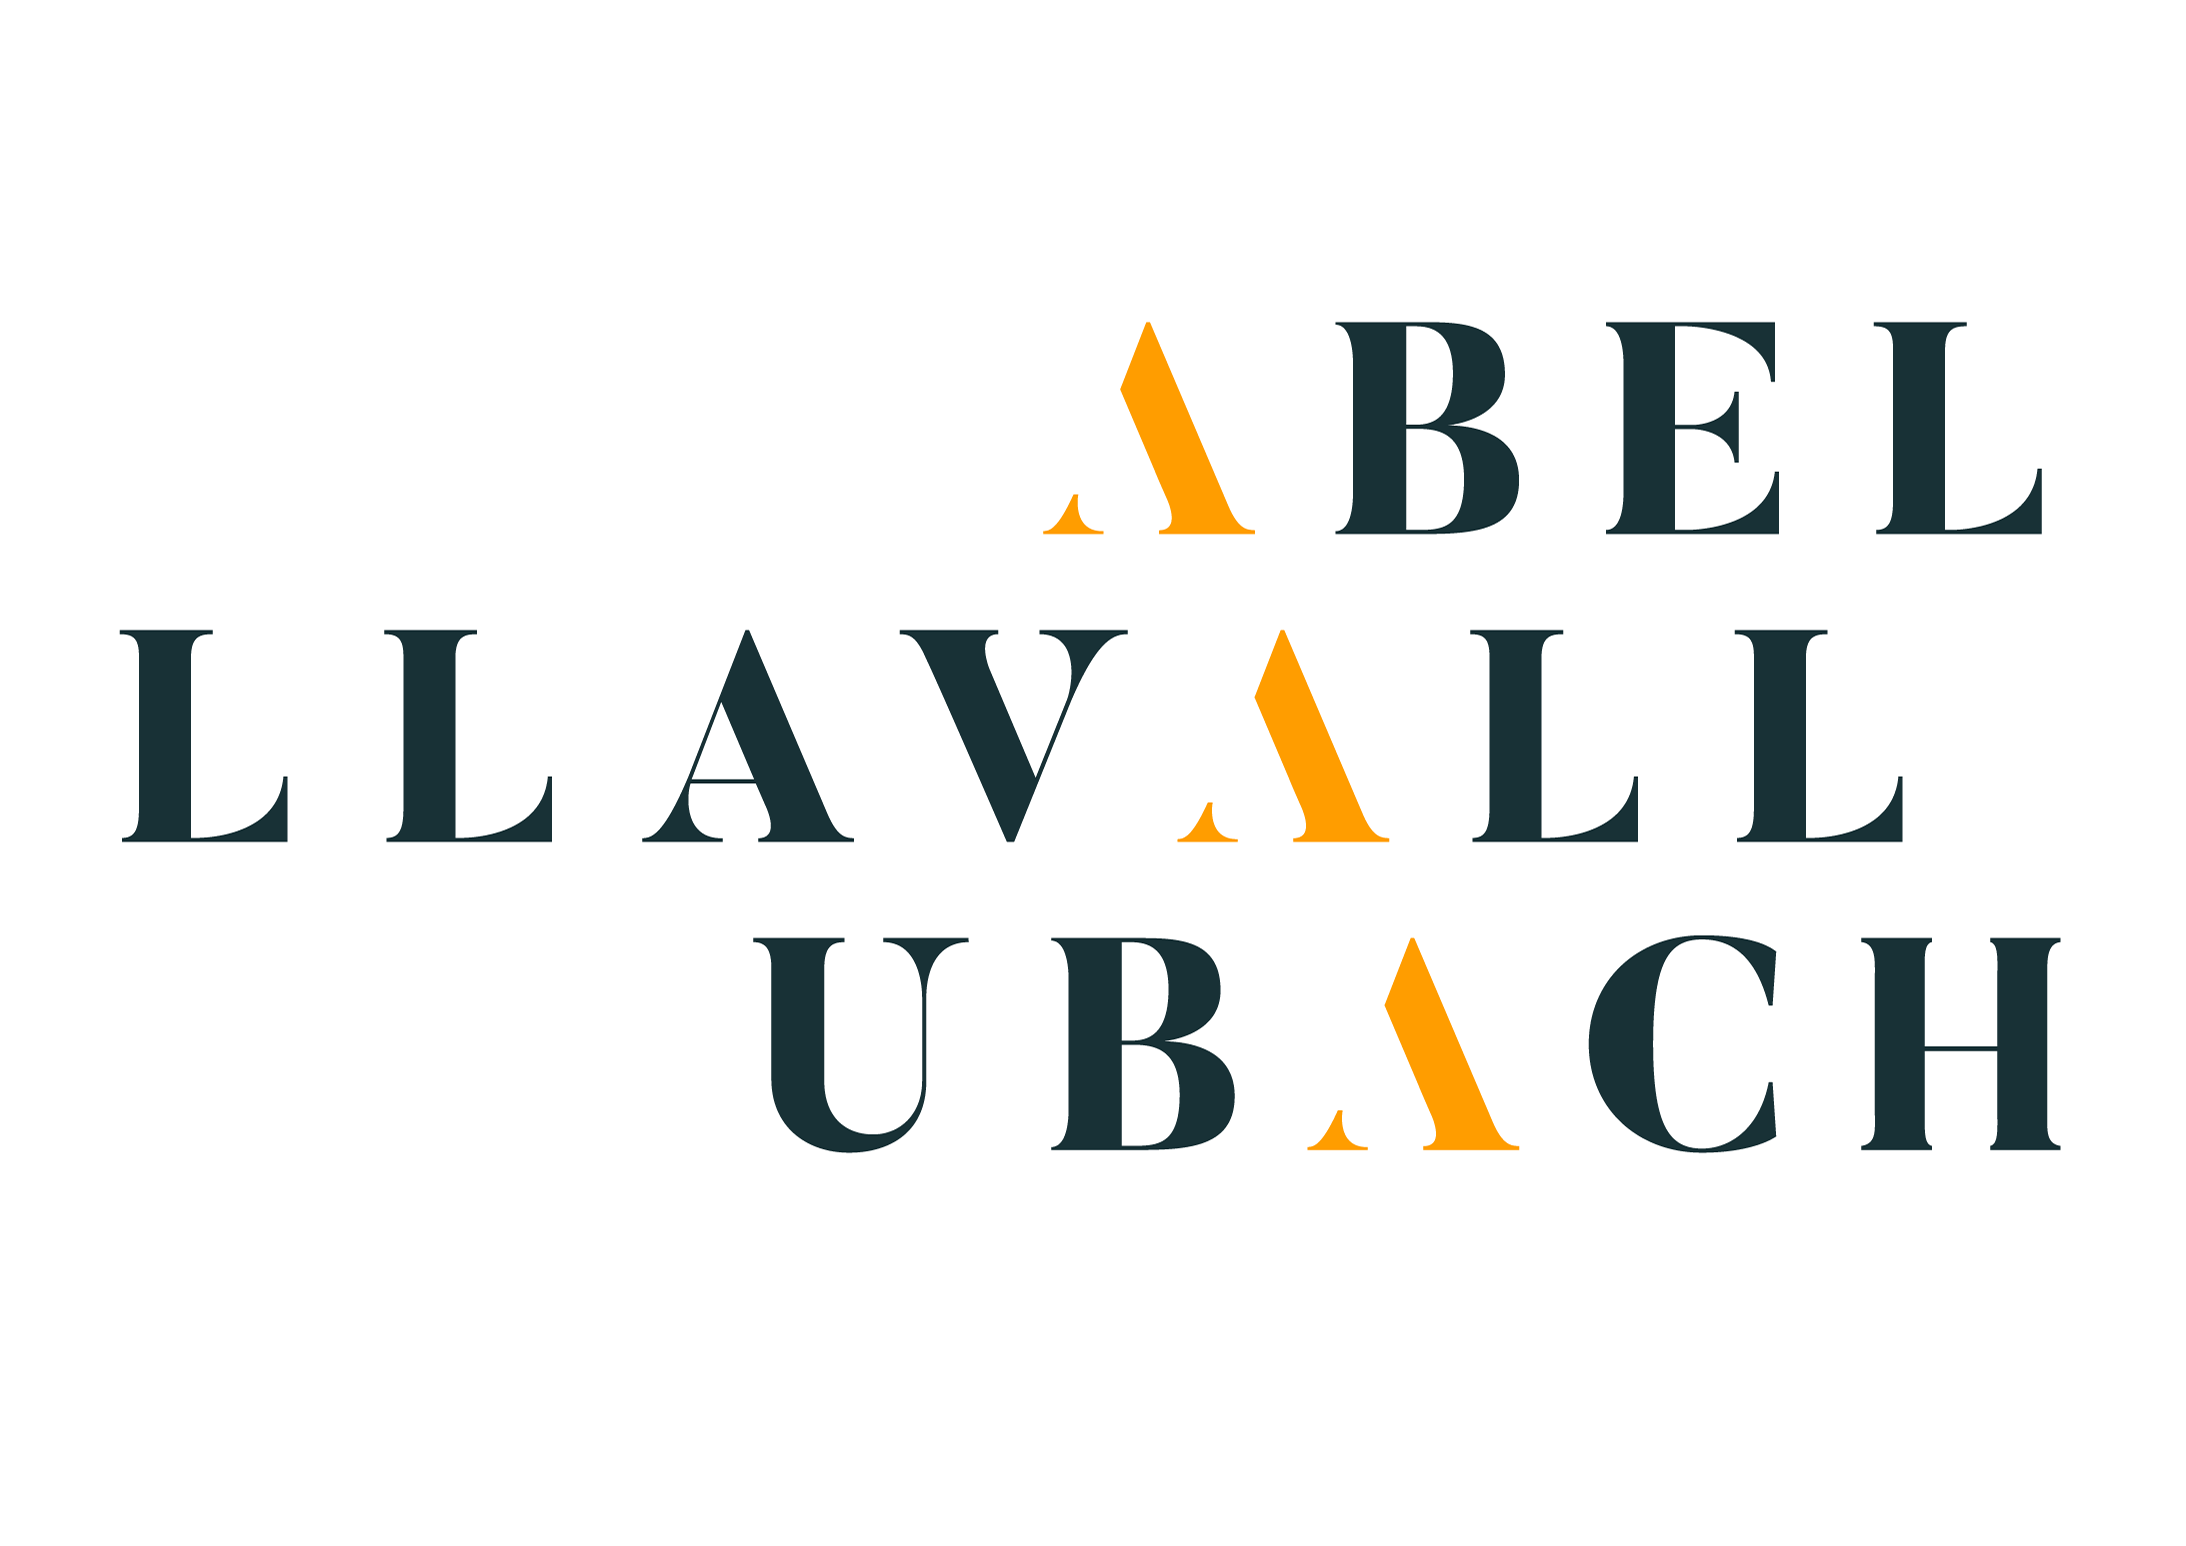 Abel Llavall-Ubach